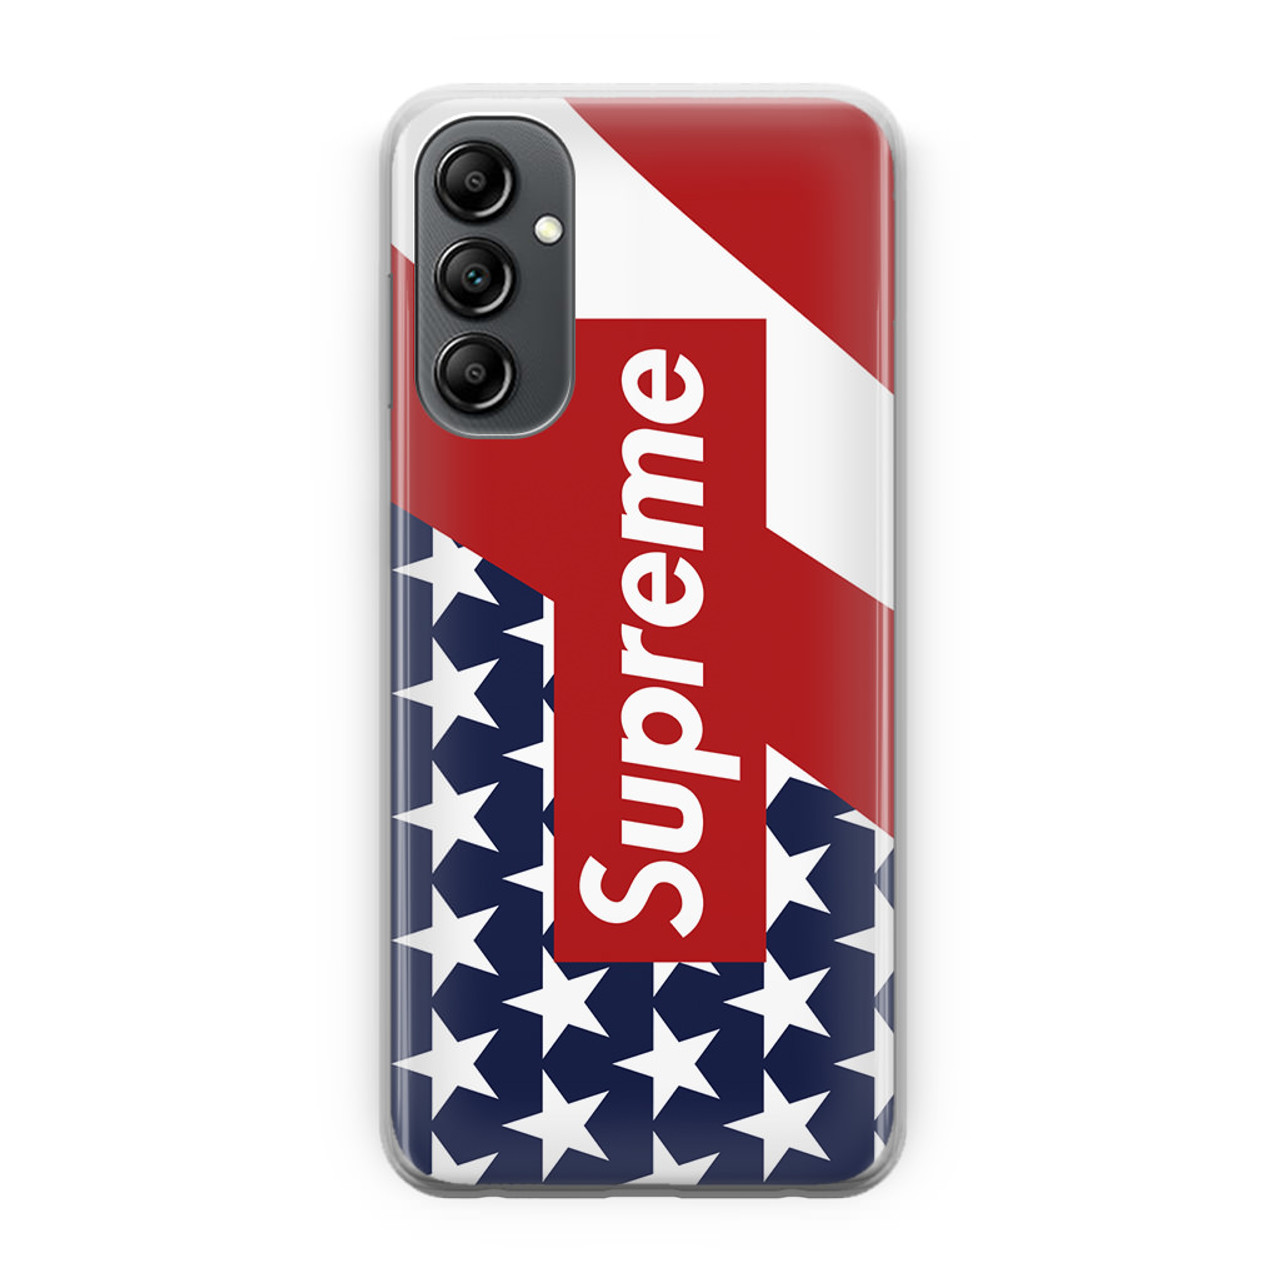 supreme phone case